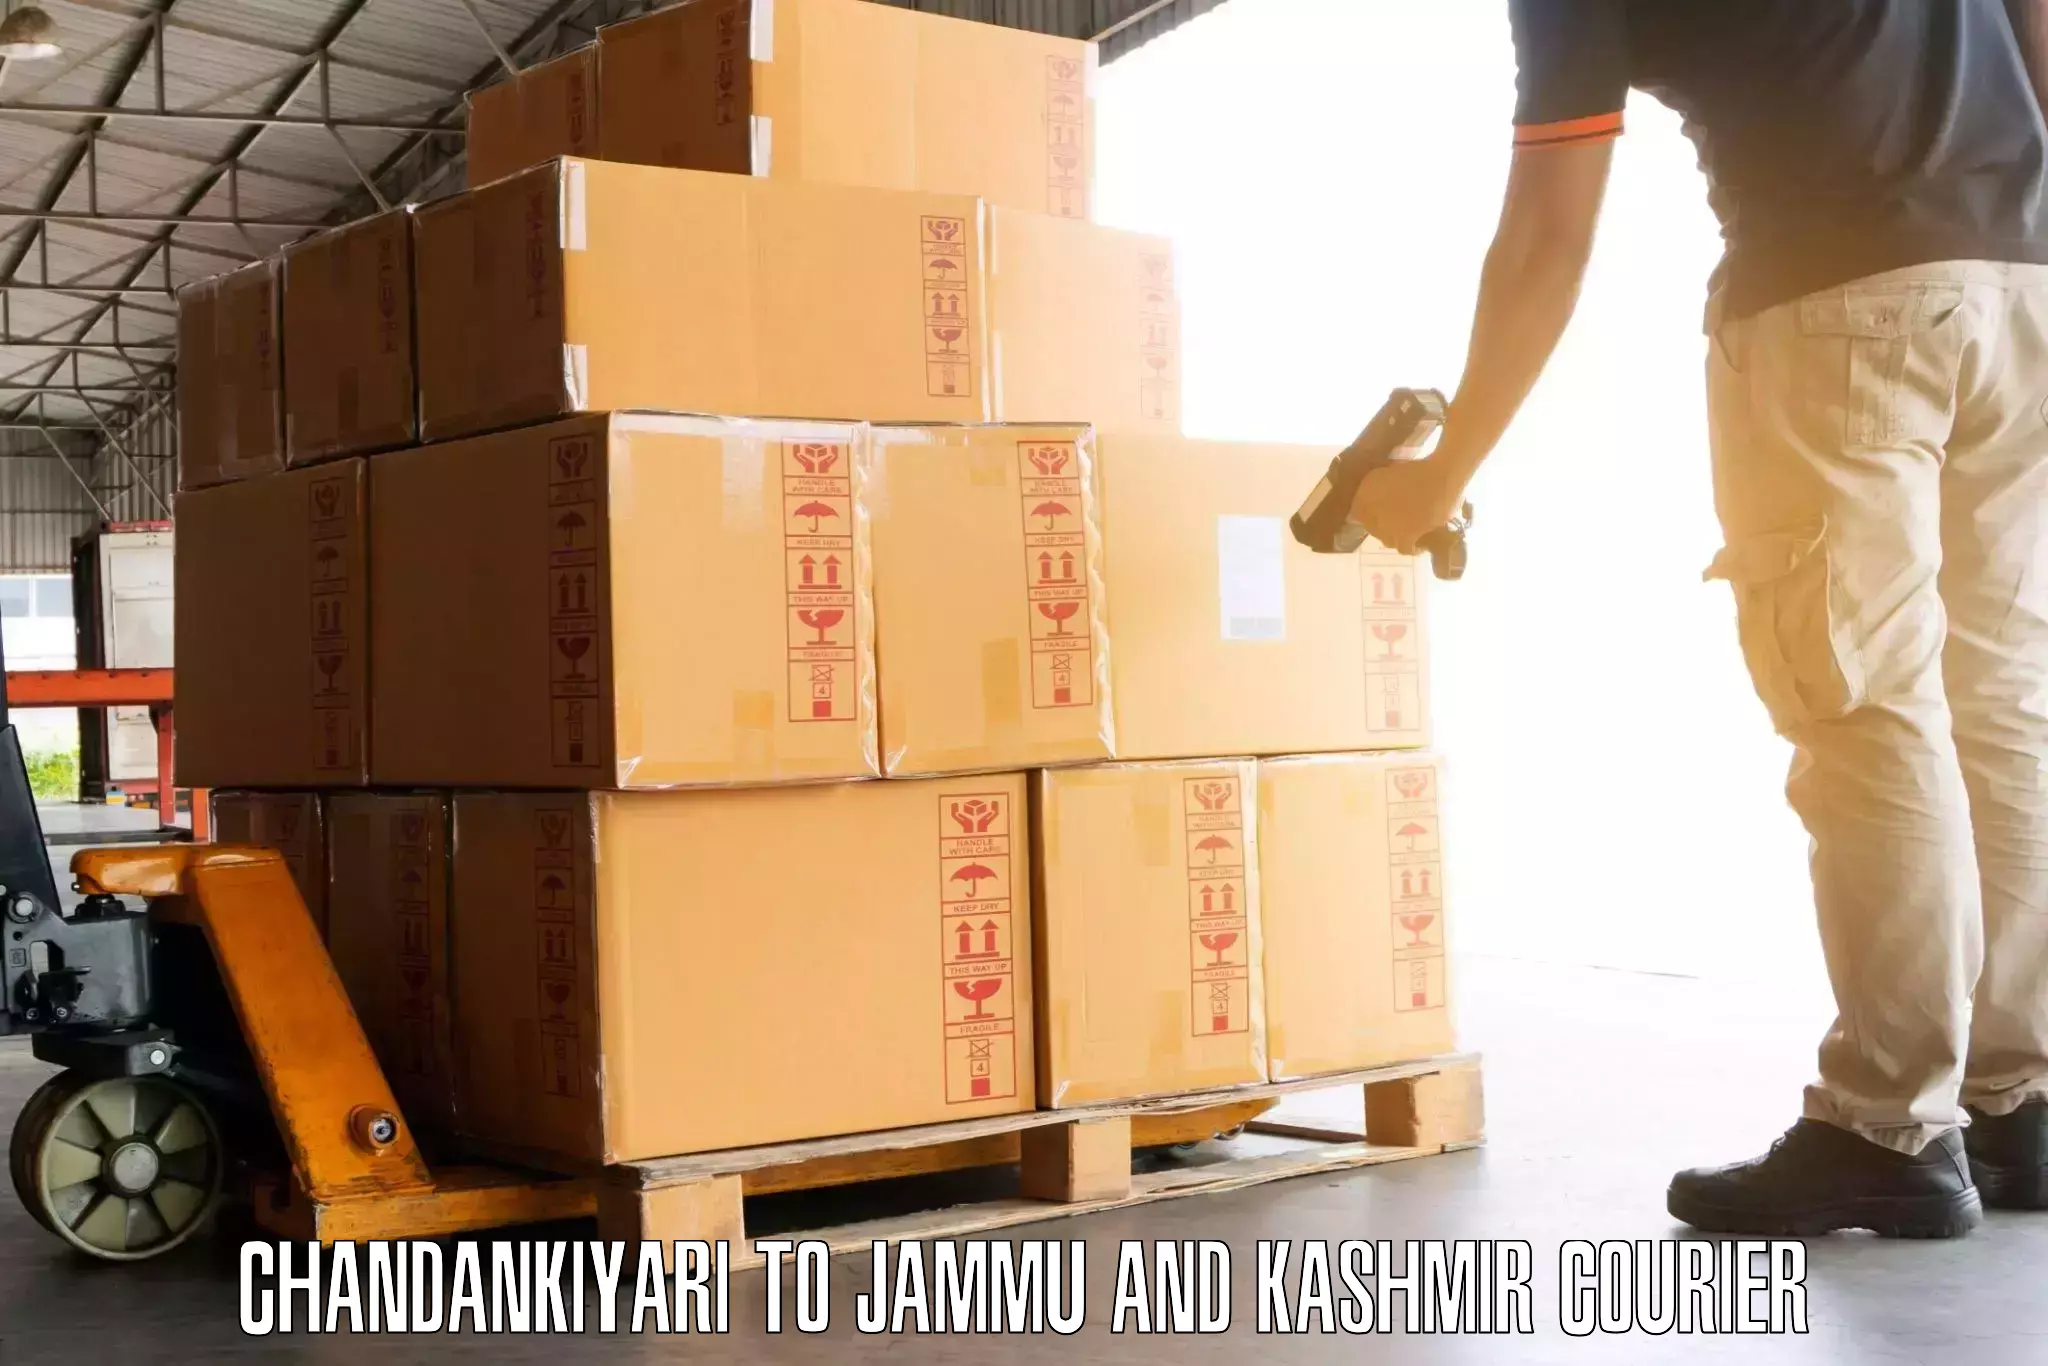 Luggage transport service Chandankiyari to Bandipur